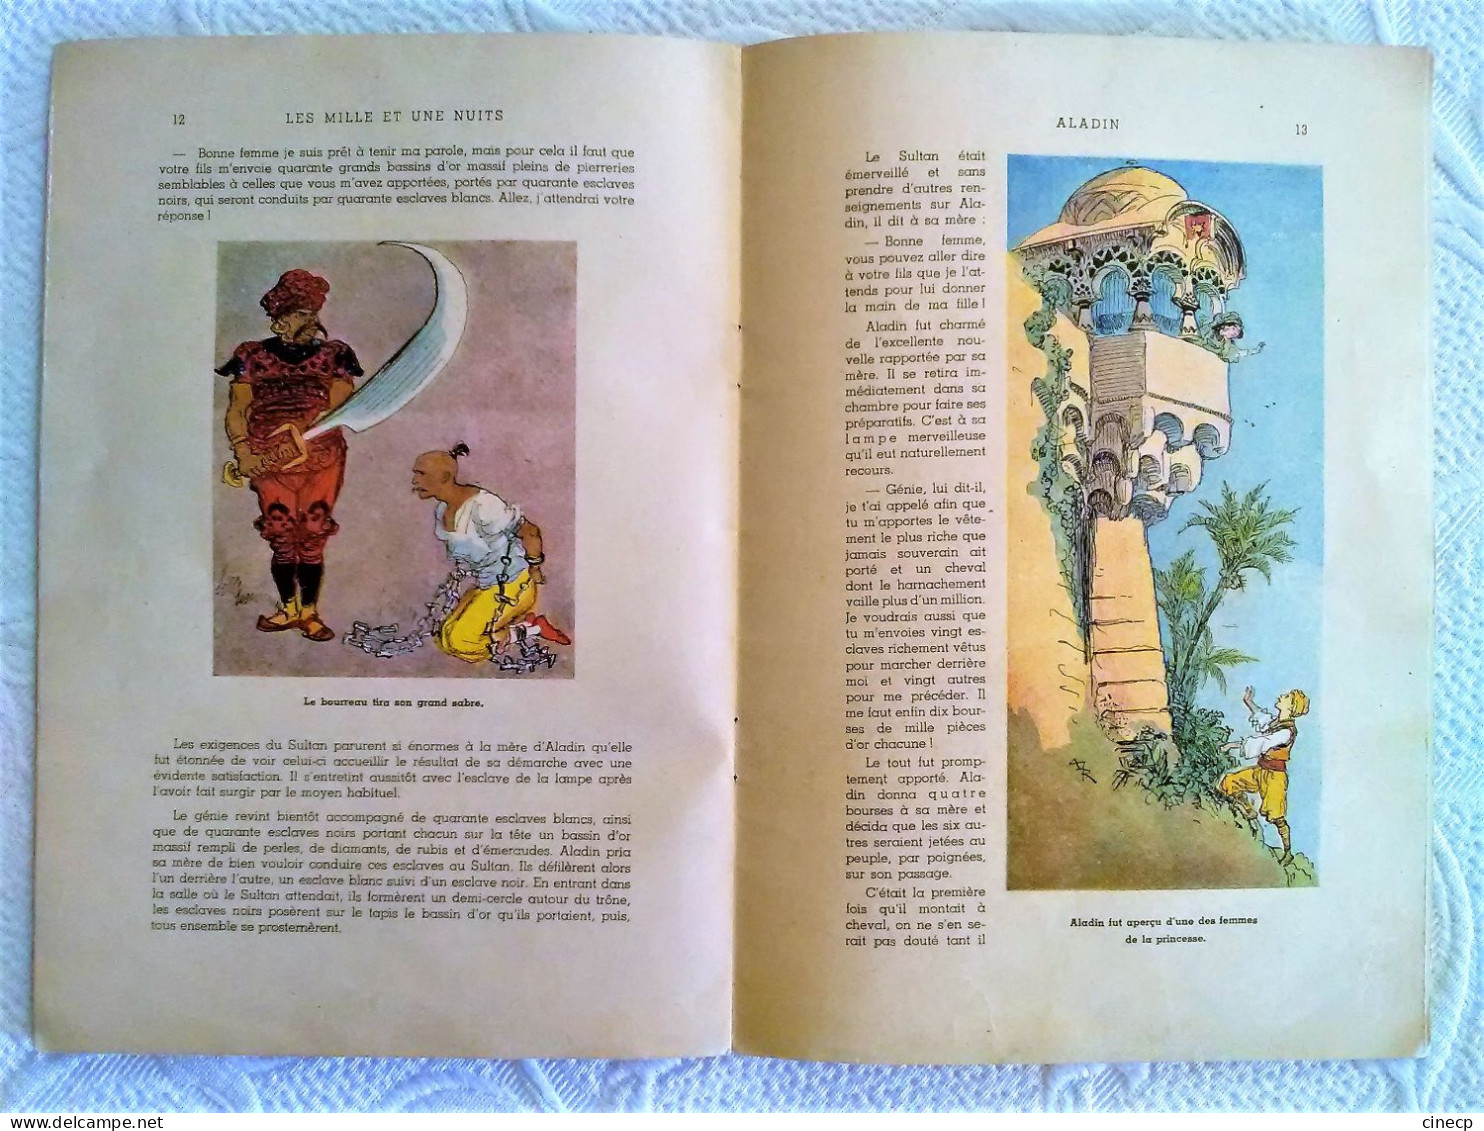 Très joli livre ancien pour enfant ALADIN ou LA LAMPE MERVEILLEUSE ILLUSTRATEUR ROBIDA superbes dessins 16 pages